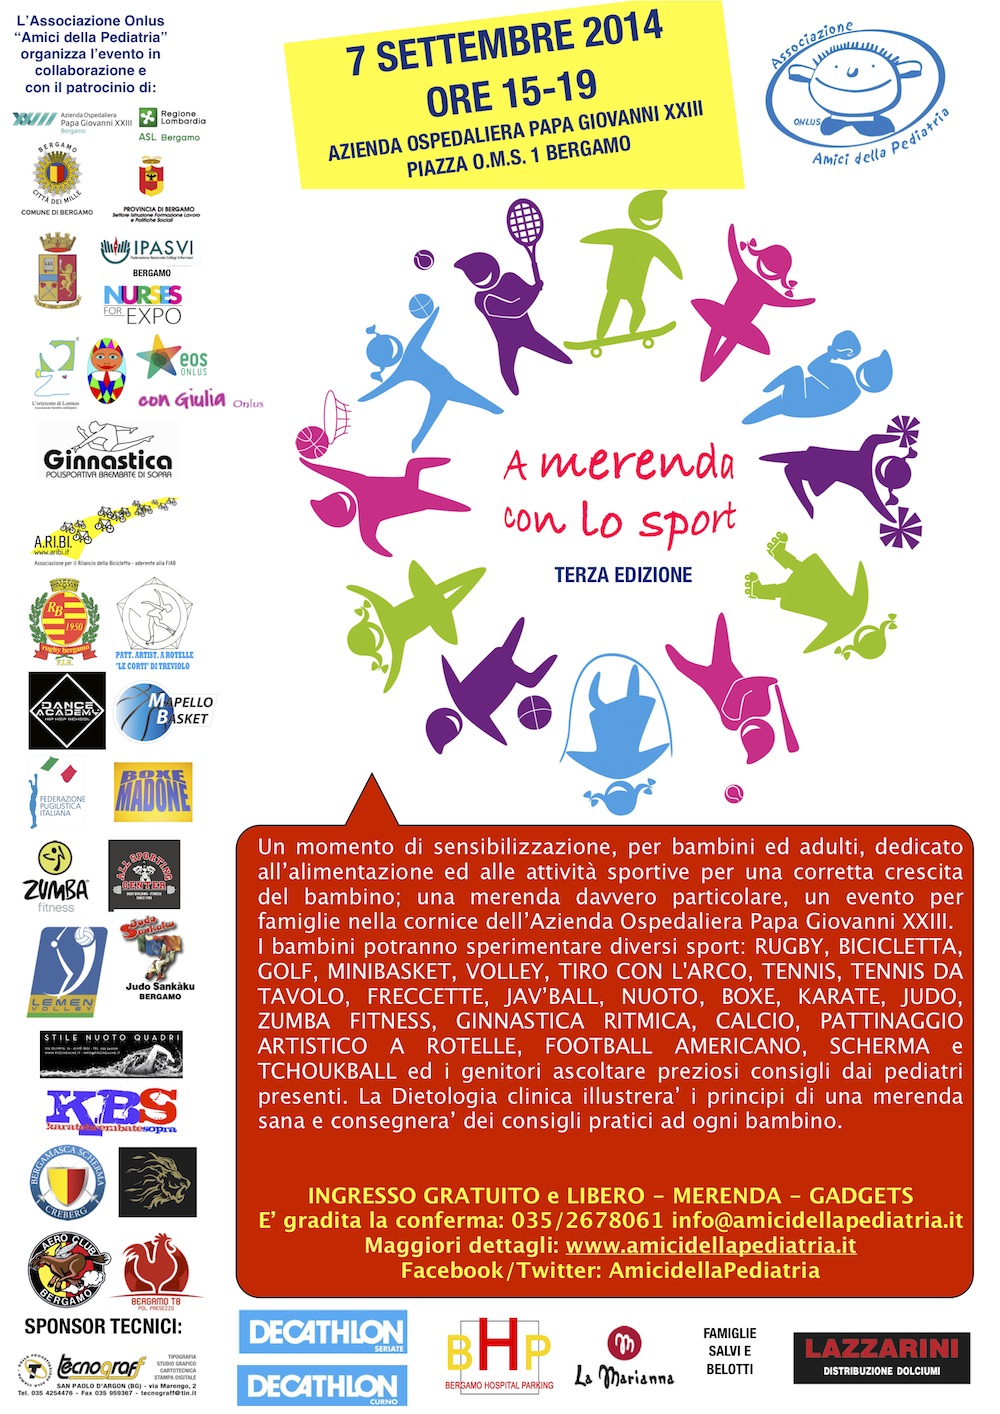 14 Merenda con Sportlocandina evento 2014